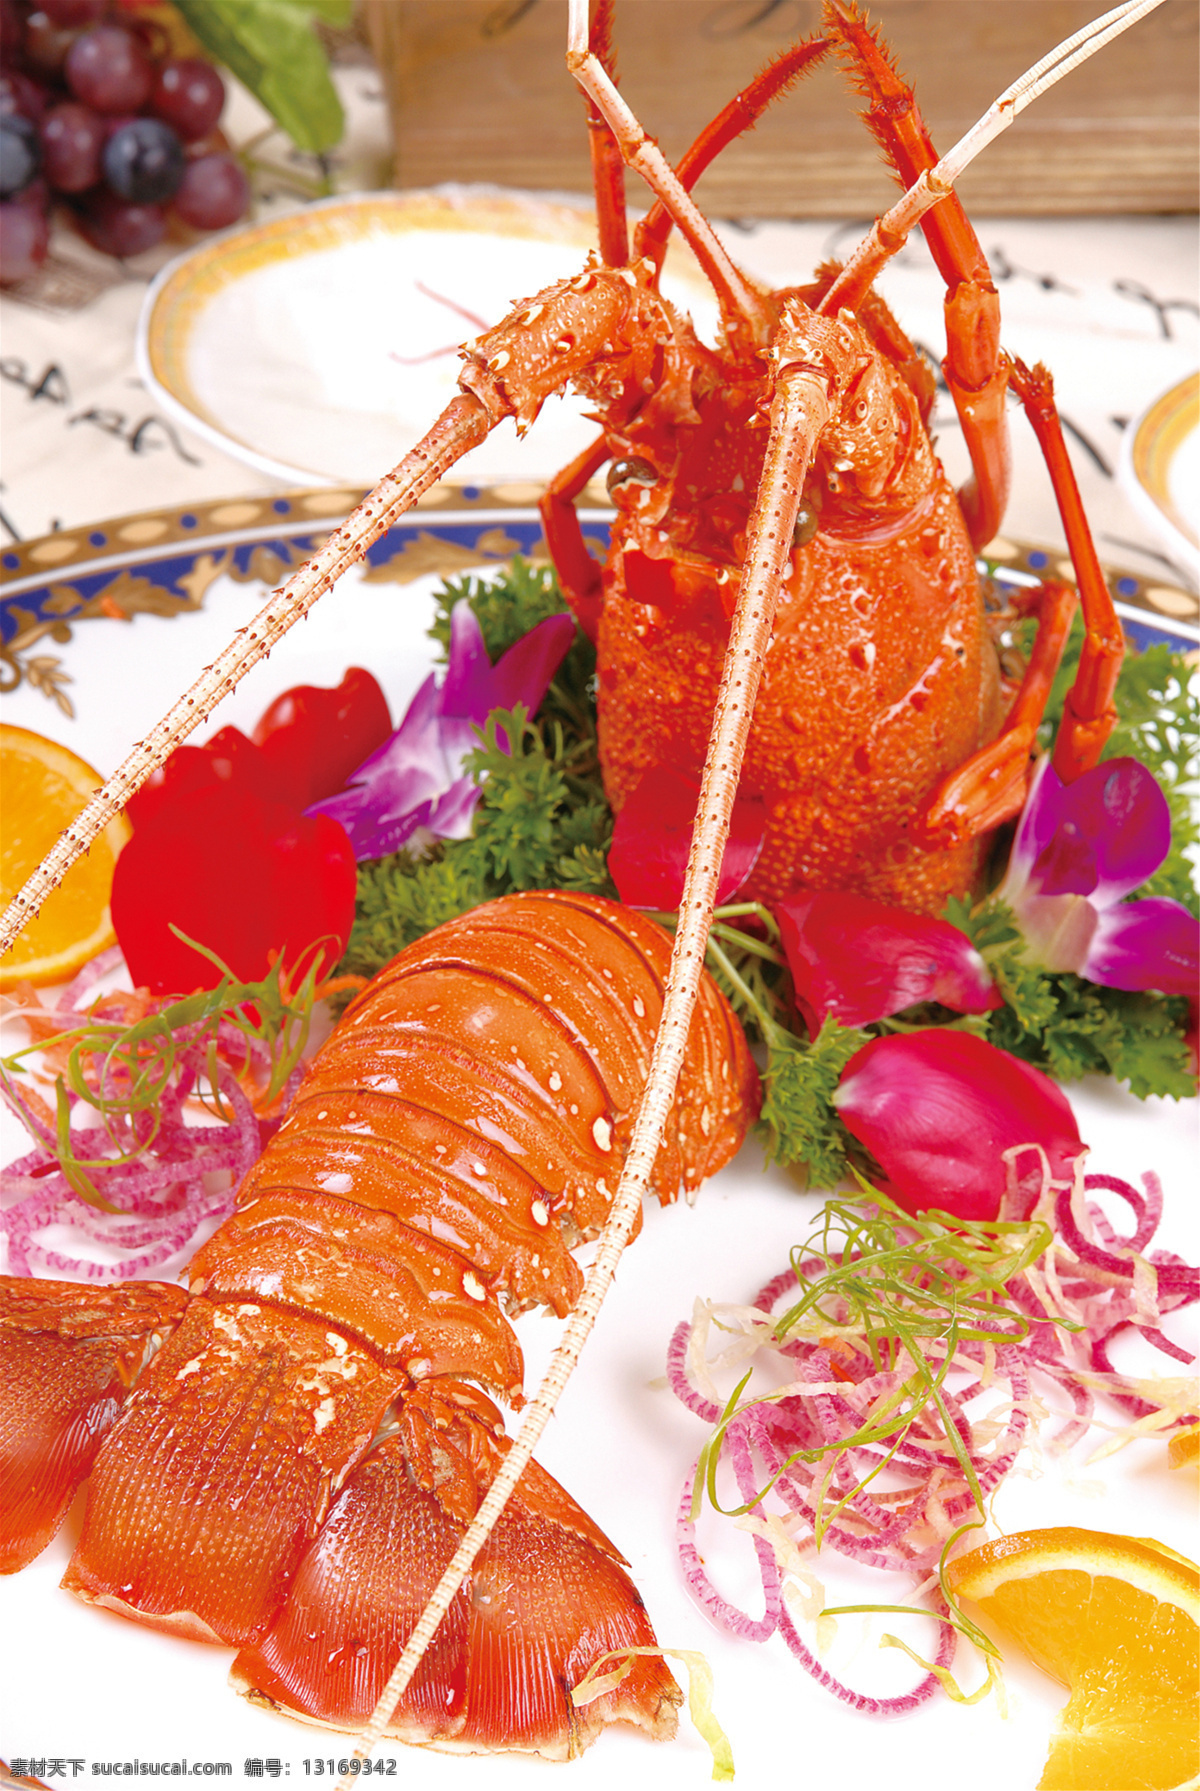 龙虾刺身图片 龙虾刺身 美食 传统美食 餐饮美食 高清菜谱用图